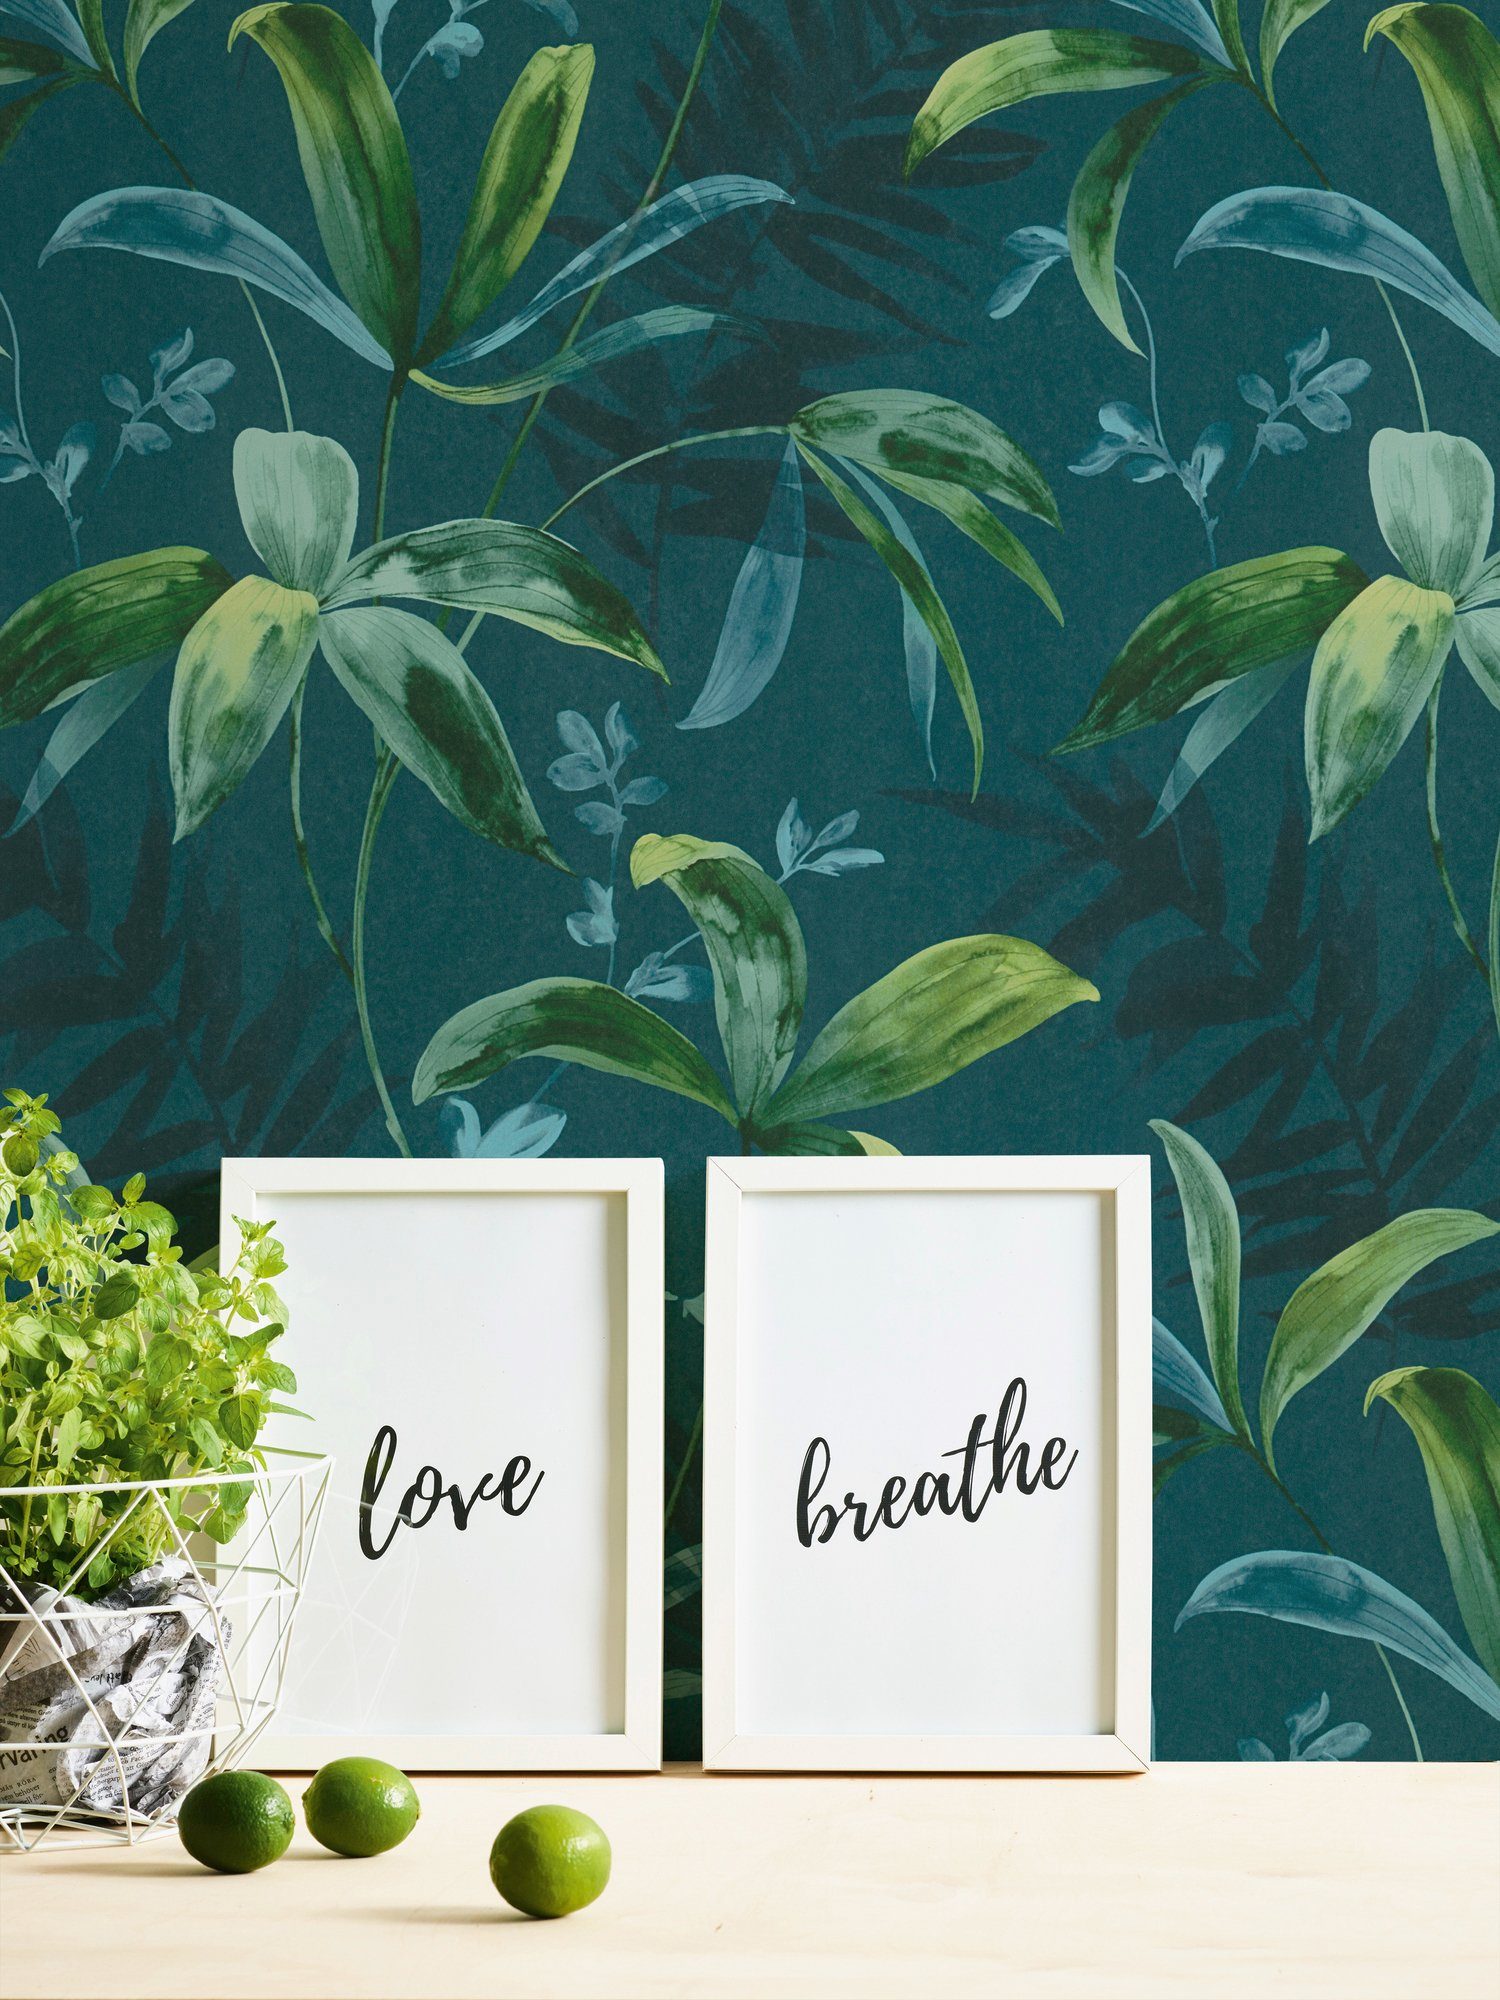 Dschungel tropisch, blau/grün Jungle glatt, Chic, floral, botanisch, Paper Architects Palmentapete Vliestapete Tapete